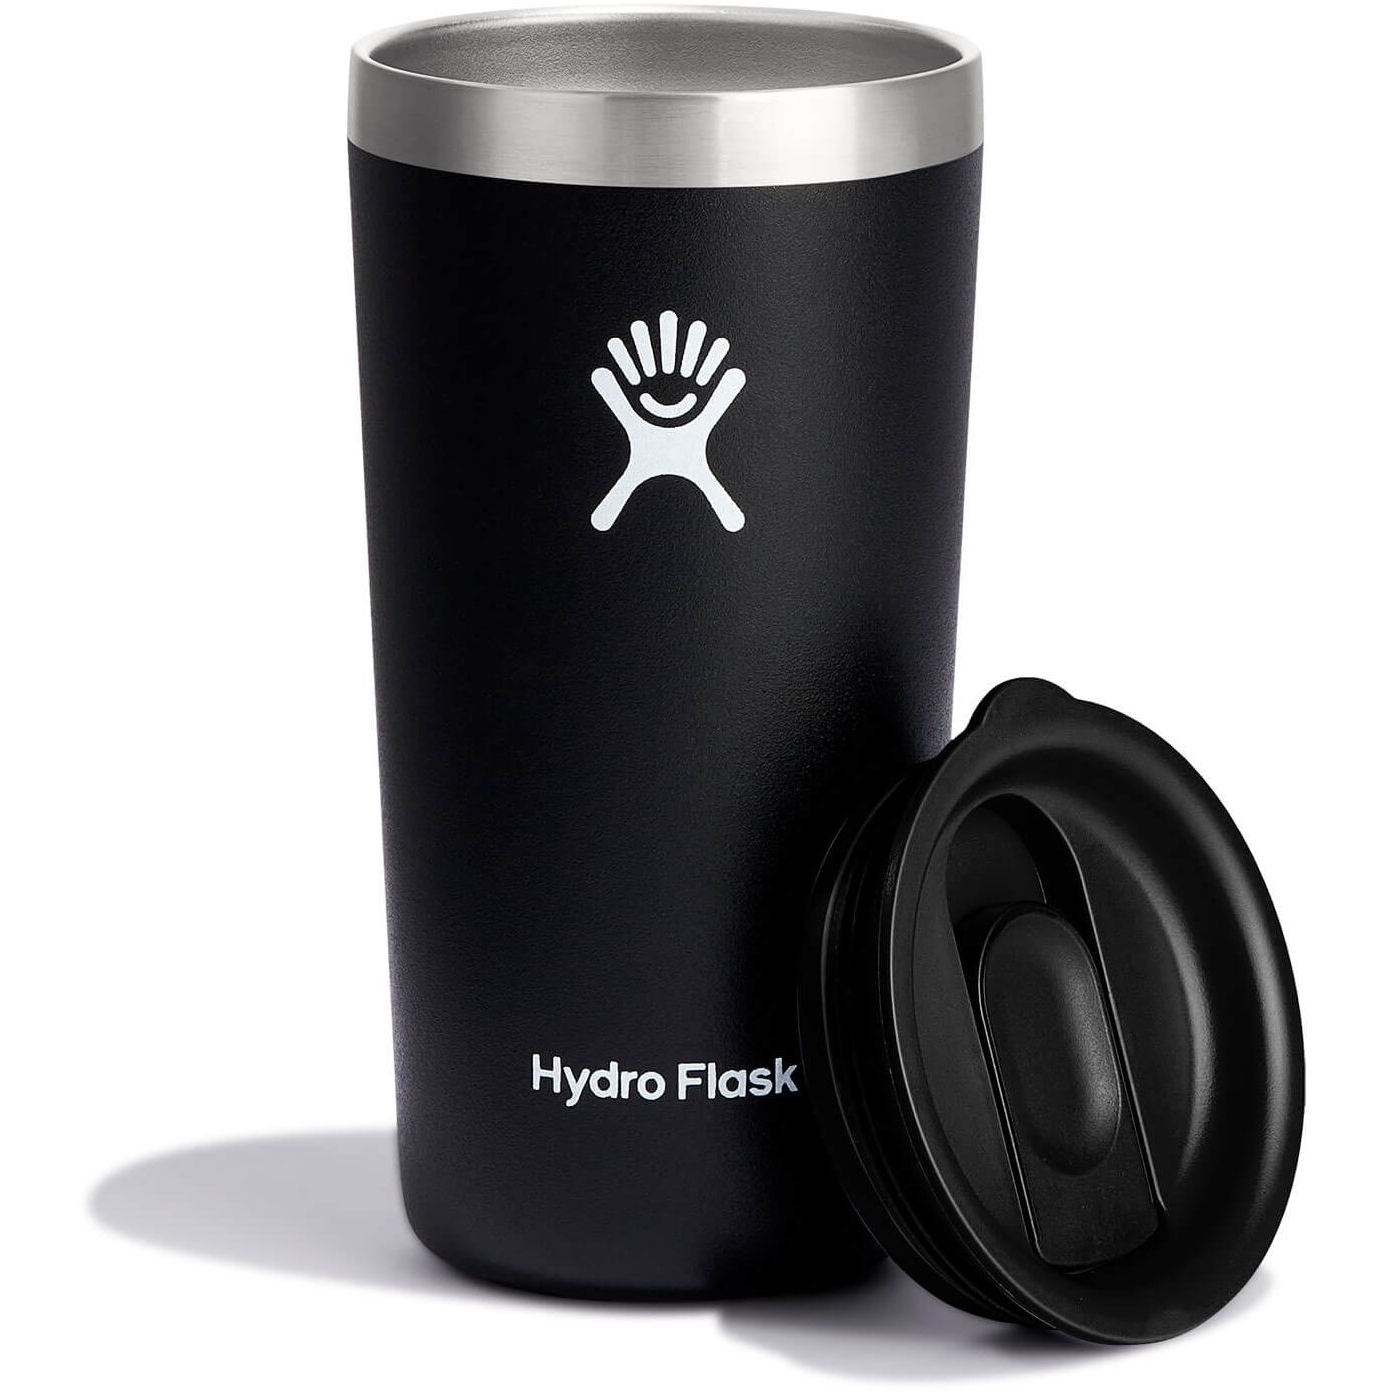 Productfoto van Hydro Flask 12 oz All Around Thermobeker - 354ml - Zwart